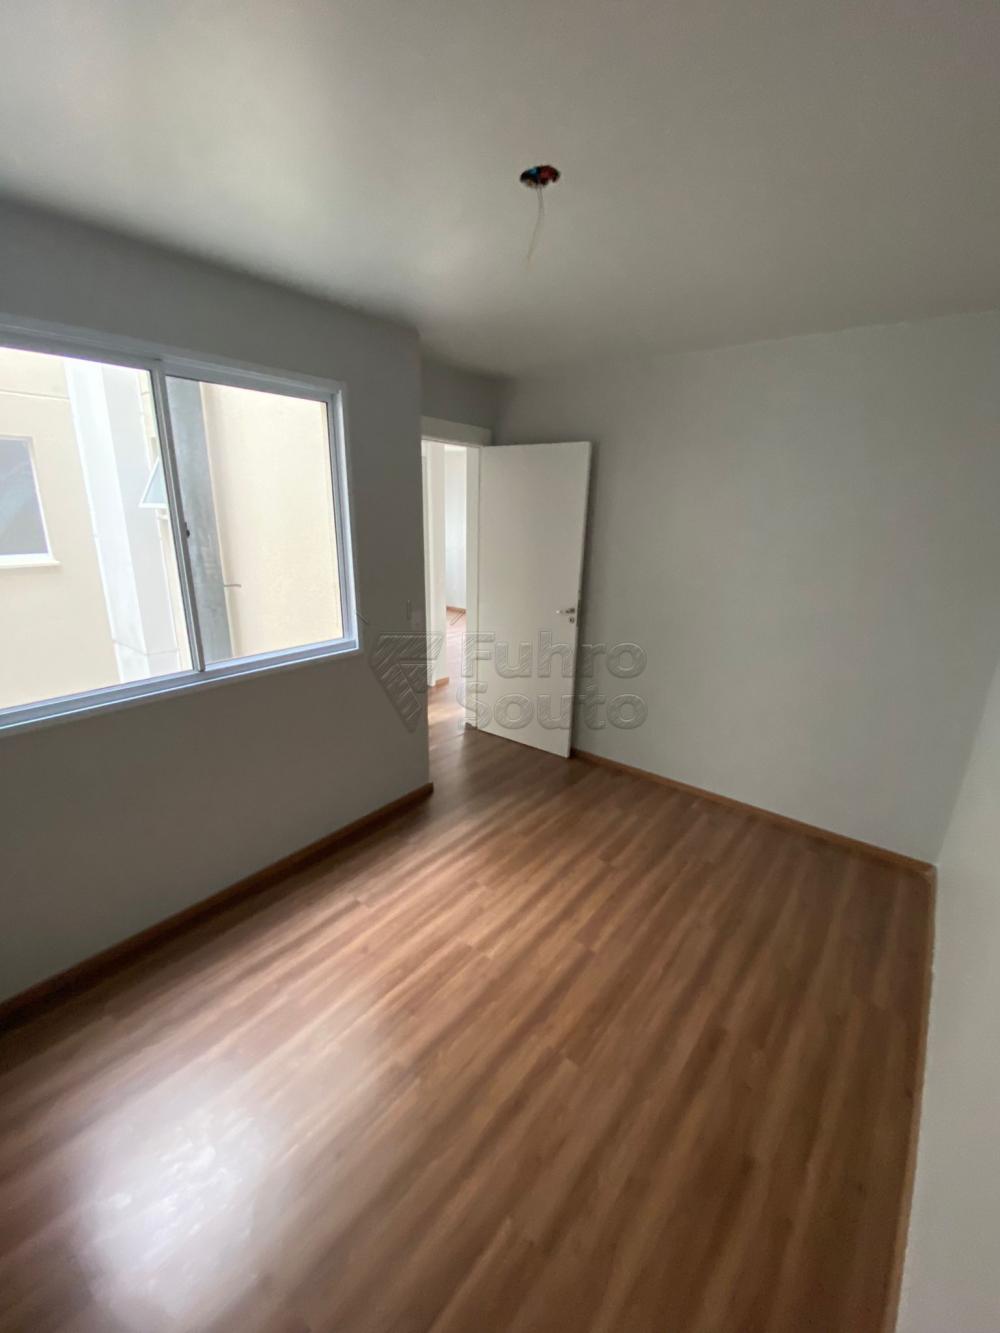 Alugar Apartamento / Padrão em Pelotas R$ 850,00 - Foto 6